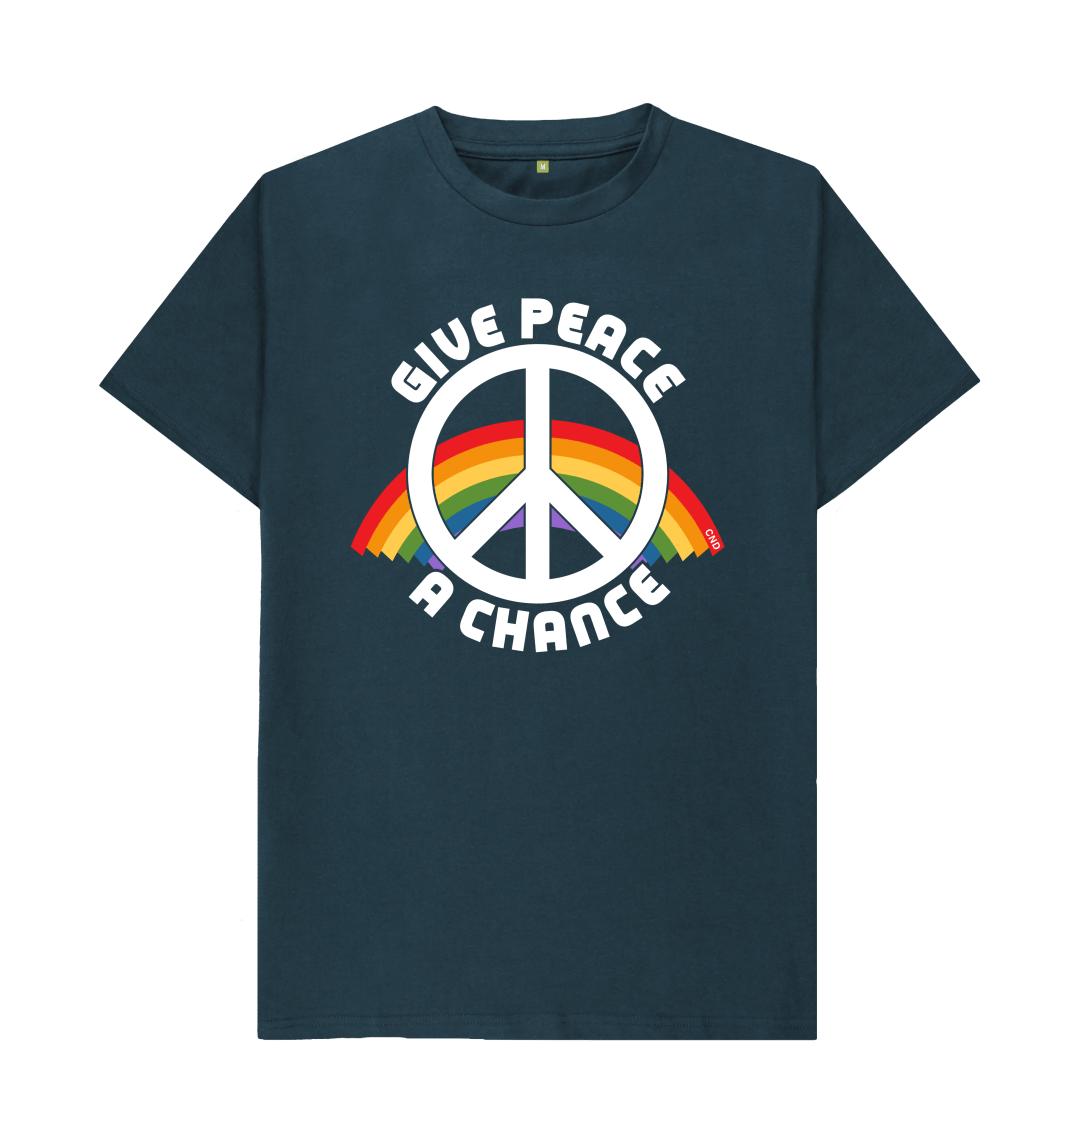 Give Peace a Chance   T-shirt当時のアメリカ第43代大統領